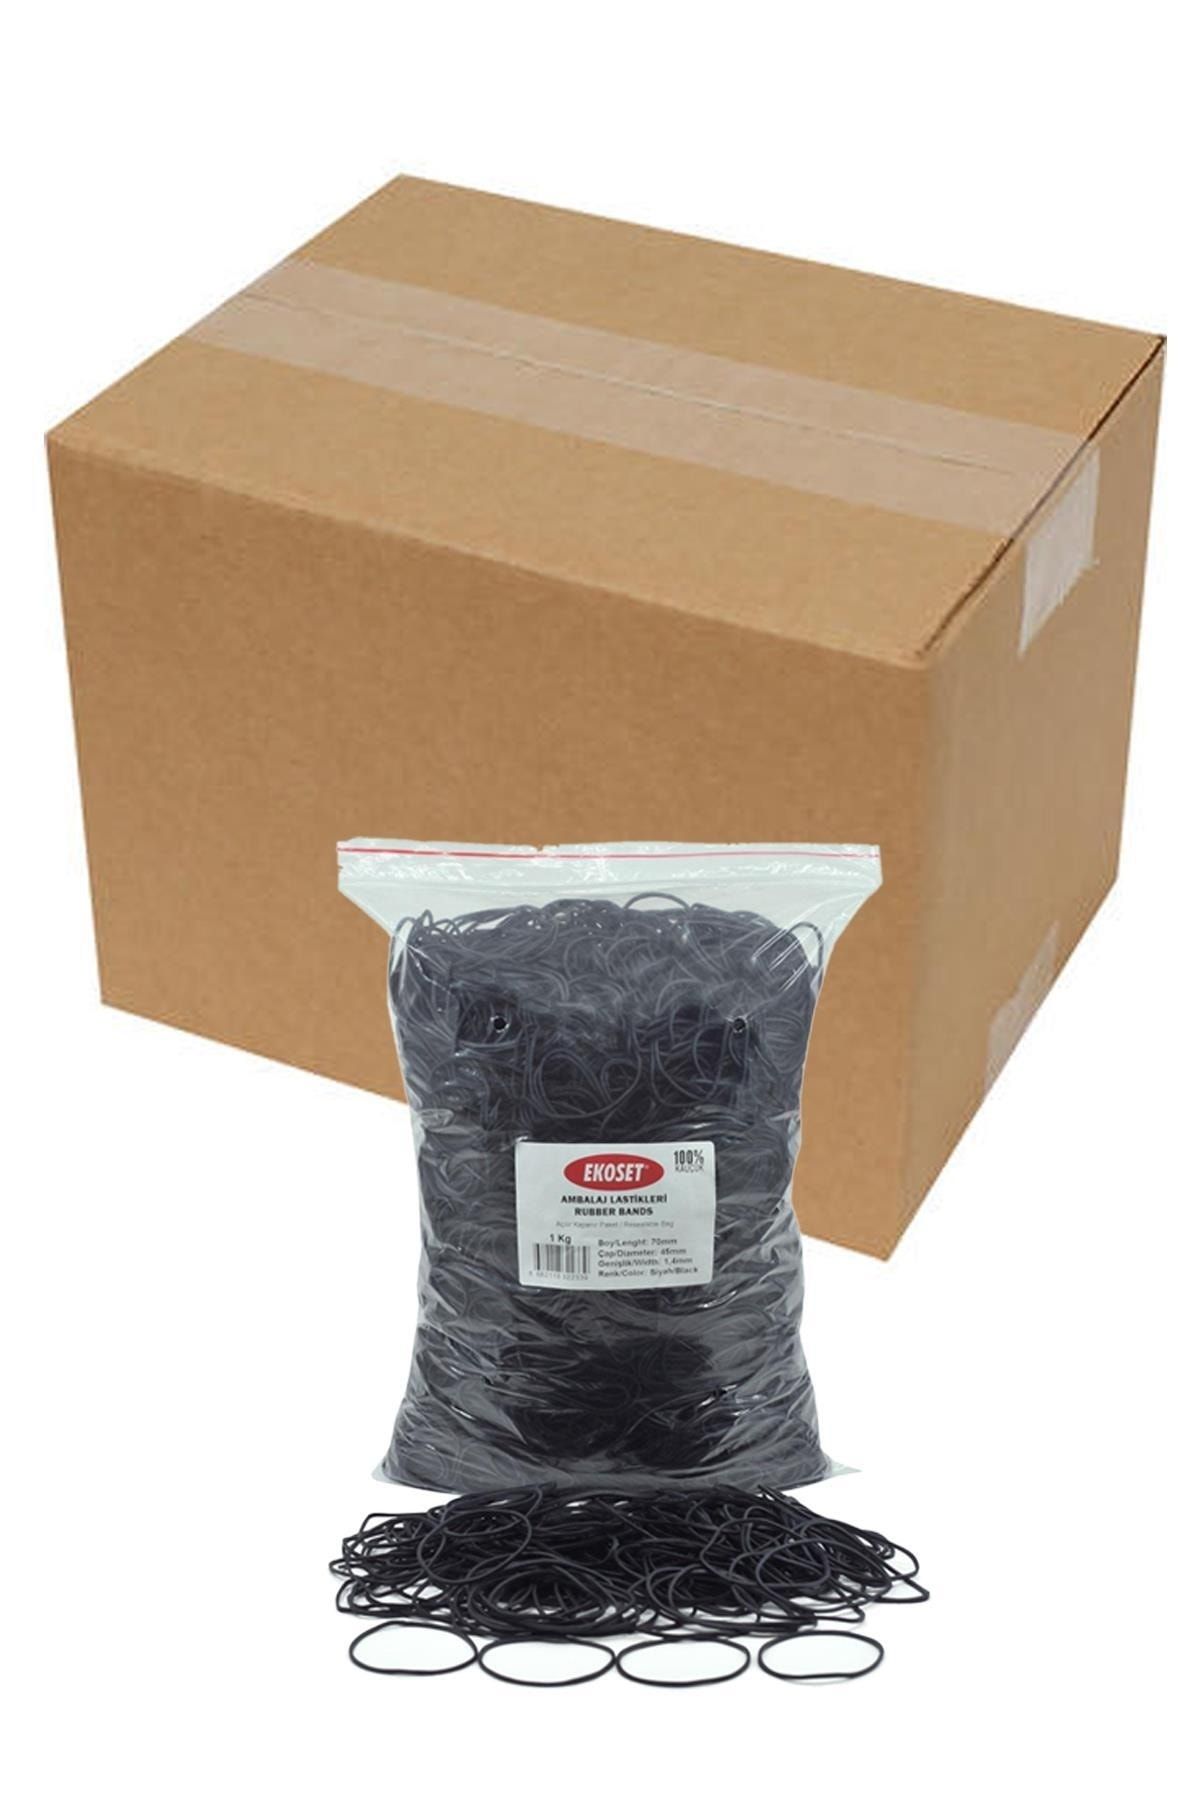 ekoset 70mm Siyah Renkli Kauçuk Paket Ambalaj Lastiği 12kg Koli